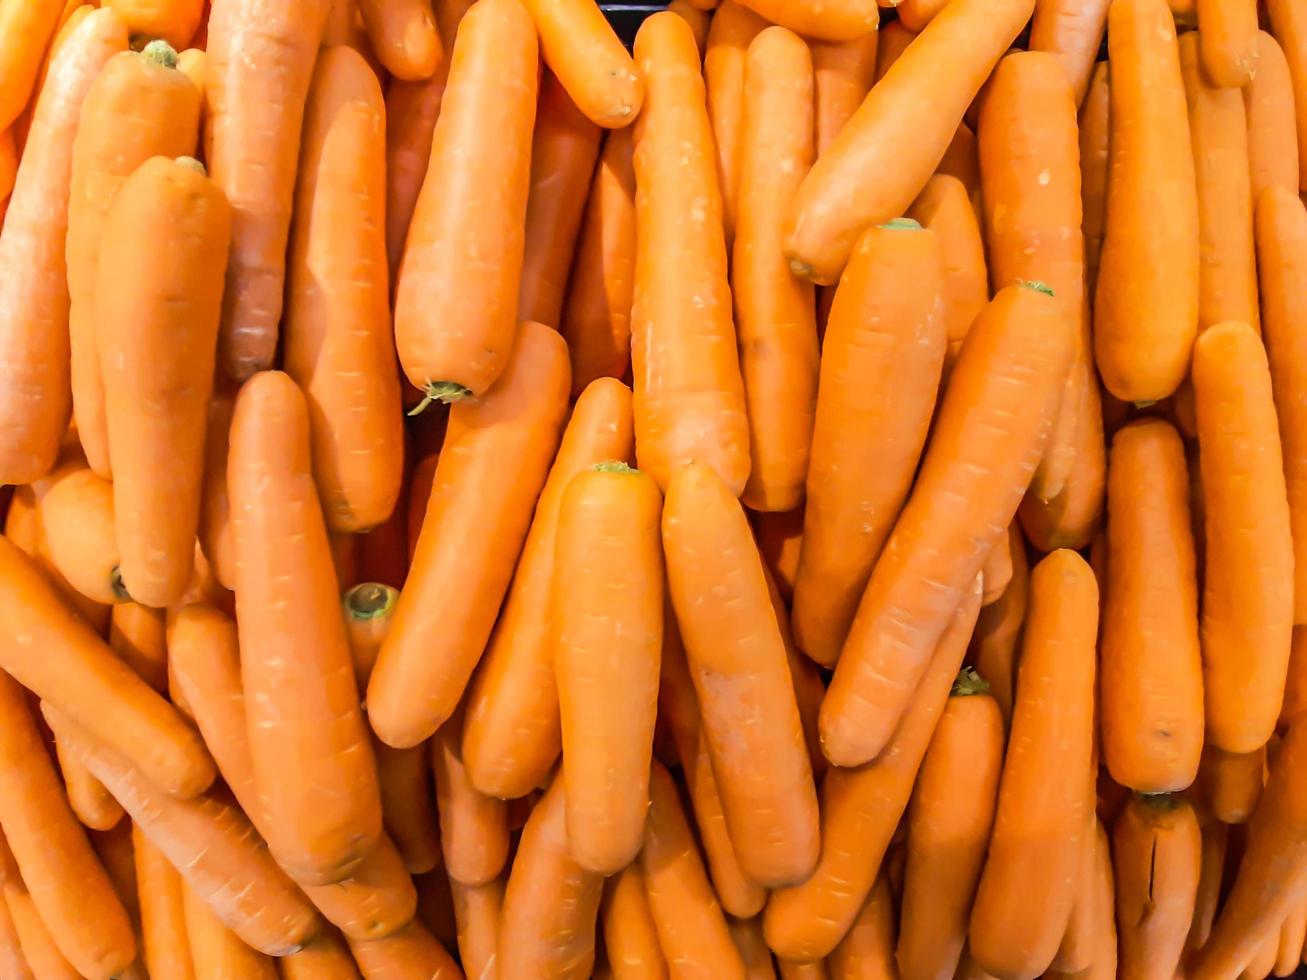 cenoura orgânica. fundo de textura de cenouras laranjas grandes frescas, as cenouras são boas para a saúde, cenouras maduras saudáveis para preparar a refeição foto